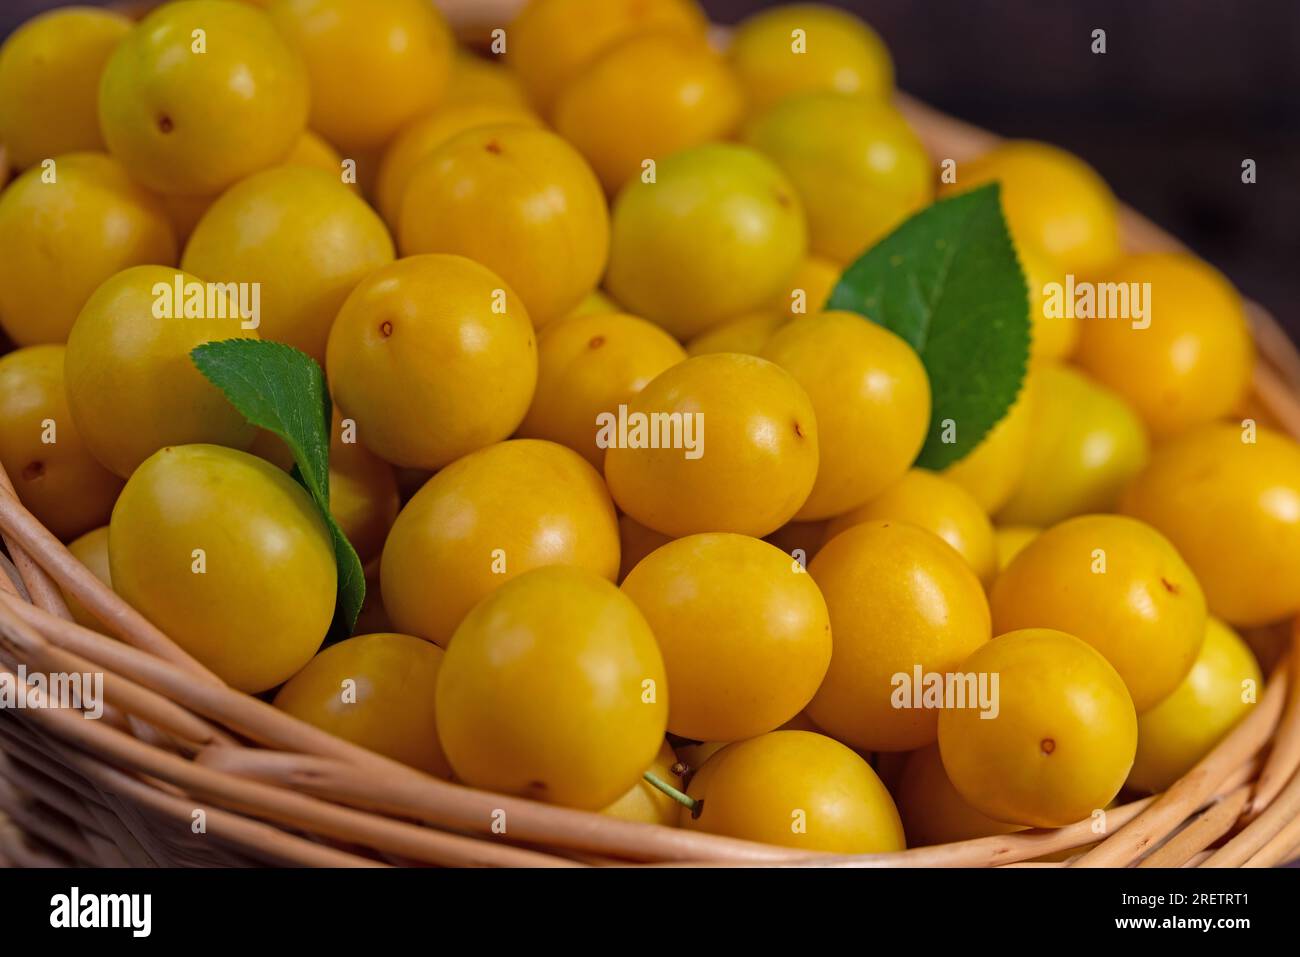 Prugne di ciliegio gialle, Prunus cerasifera, in cesto Foto Stock